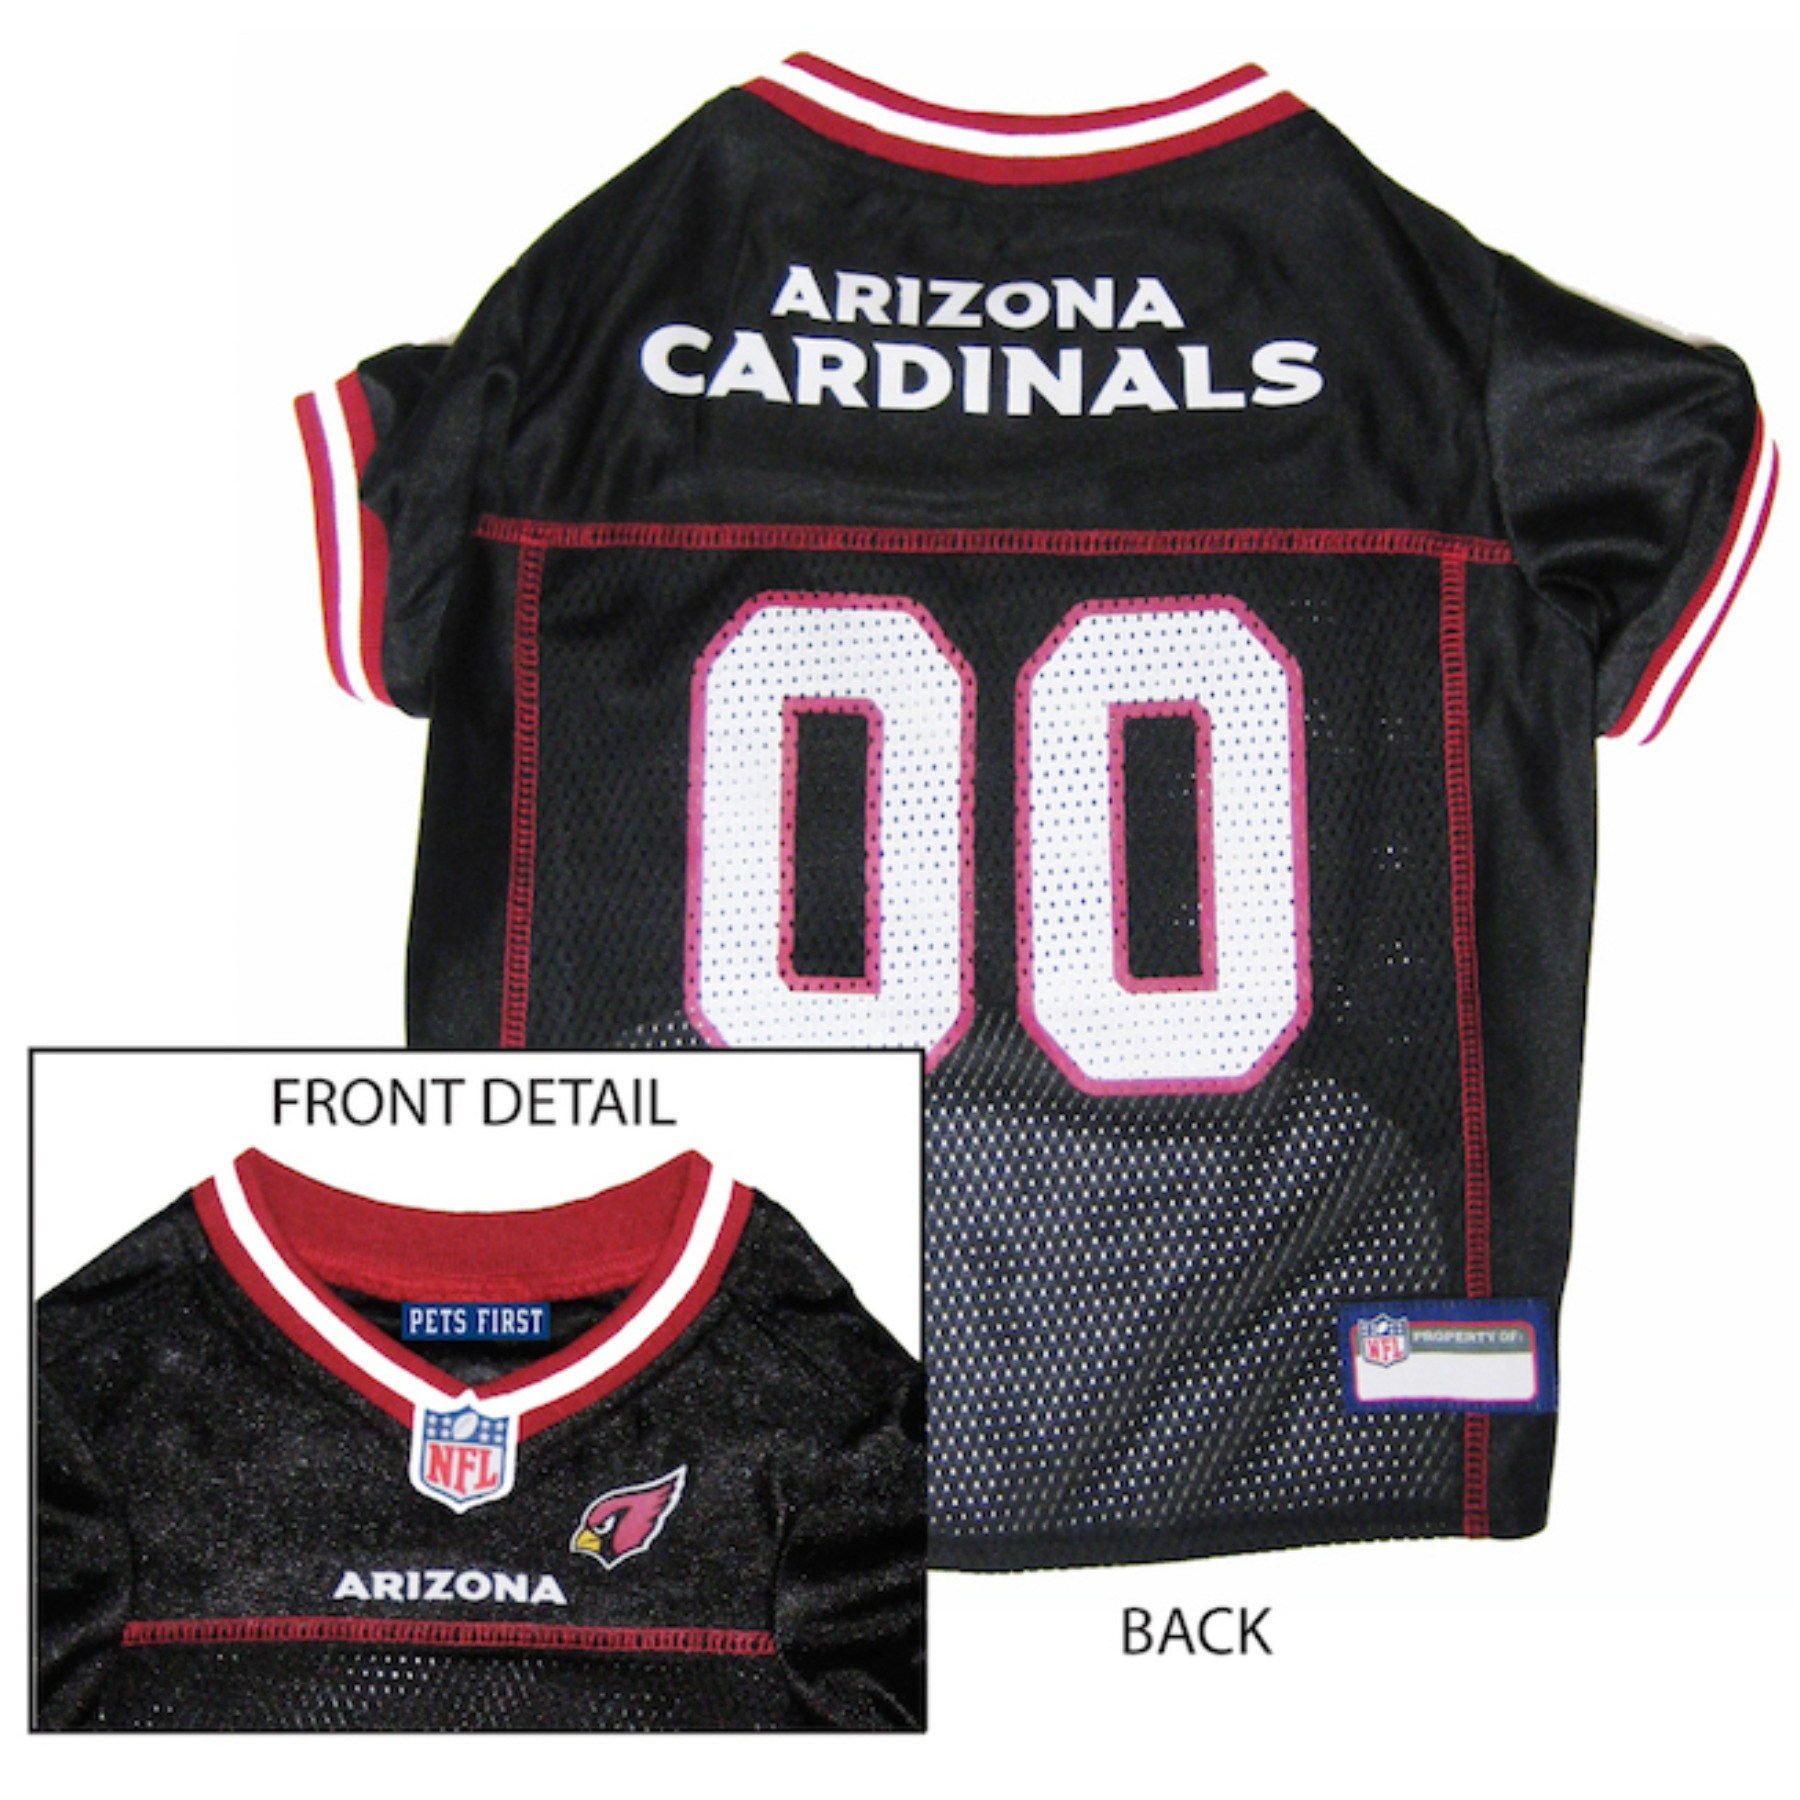 Arizona Cardinals Dog Jersey - Black